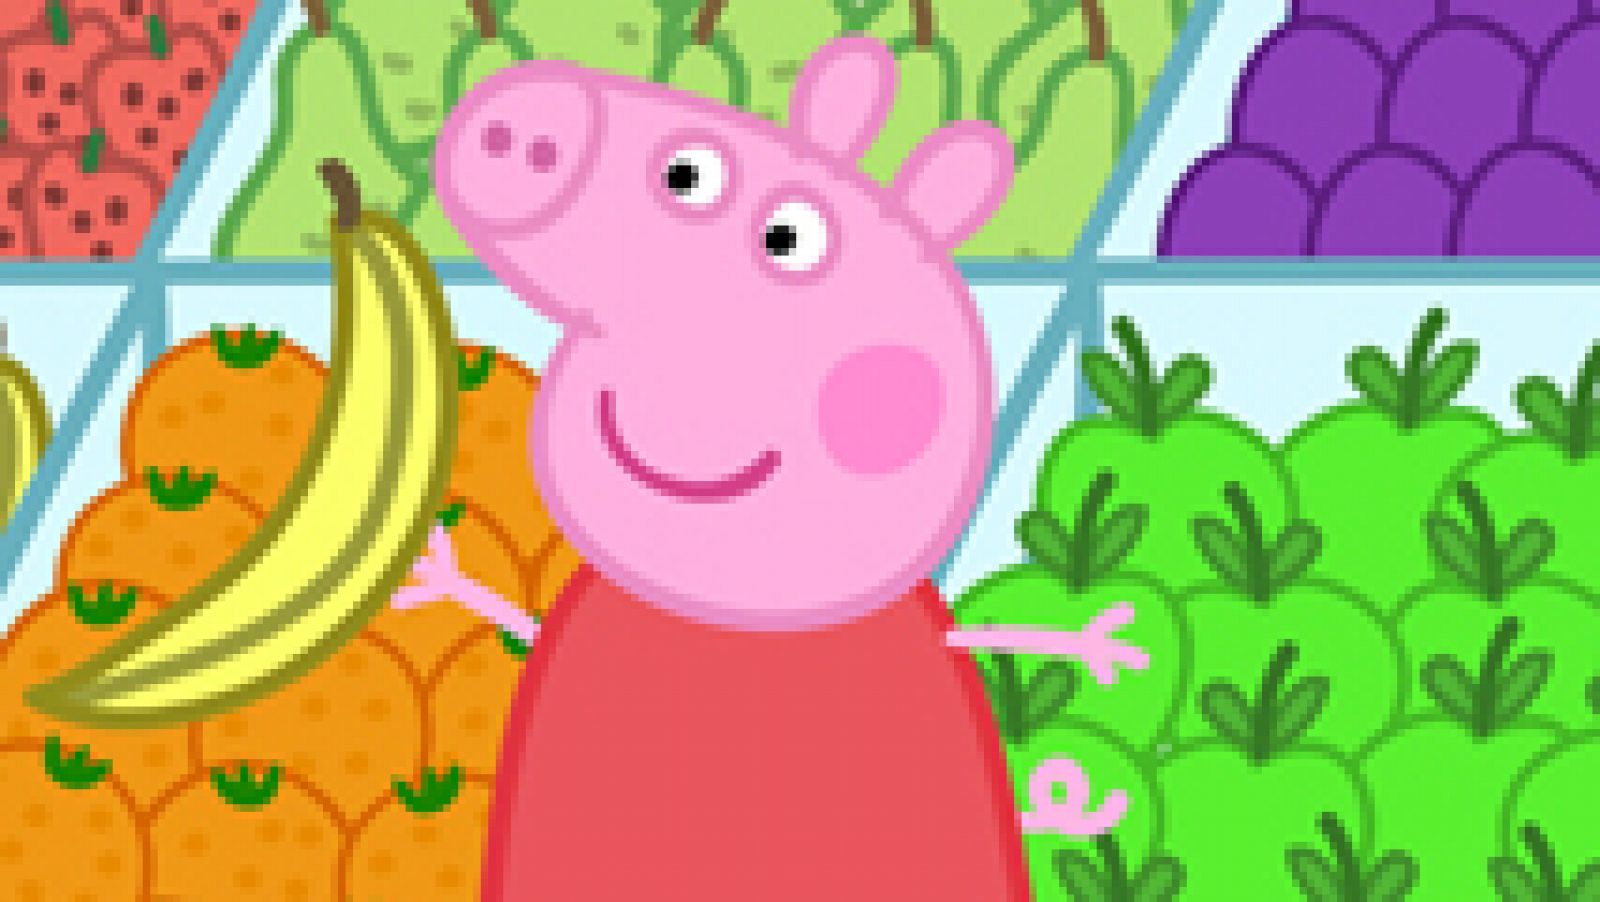 Saber vivir - Pepa Pig: ¡Hay que comer 5 frutas al día!